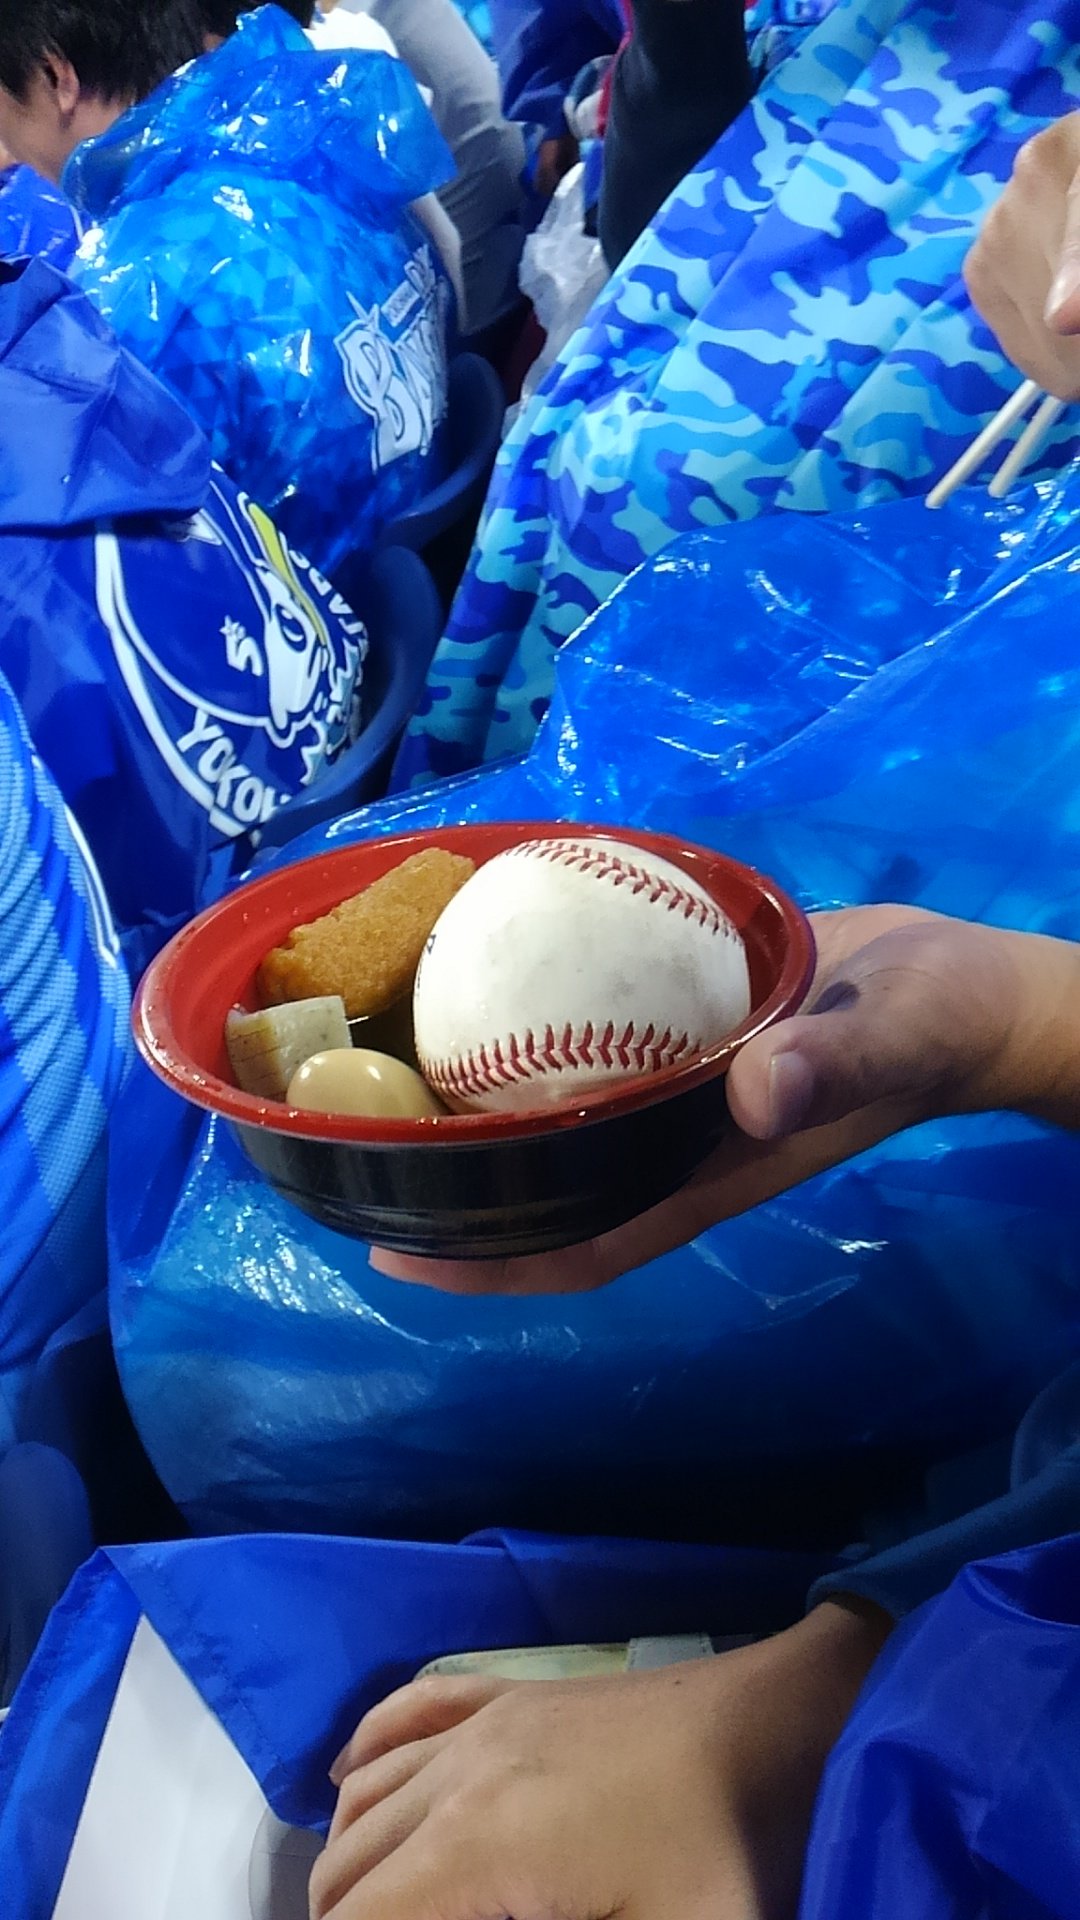 ラッキー 野球を観戦中 ファールボールがおでんの中に入るという珍事 笑